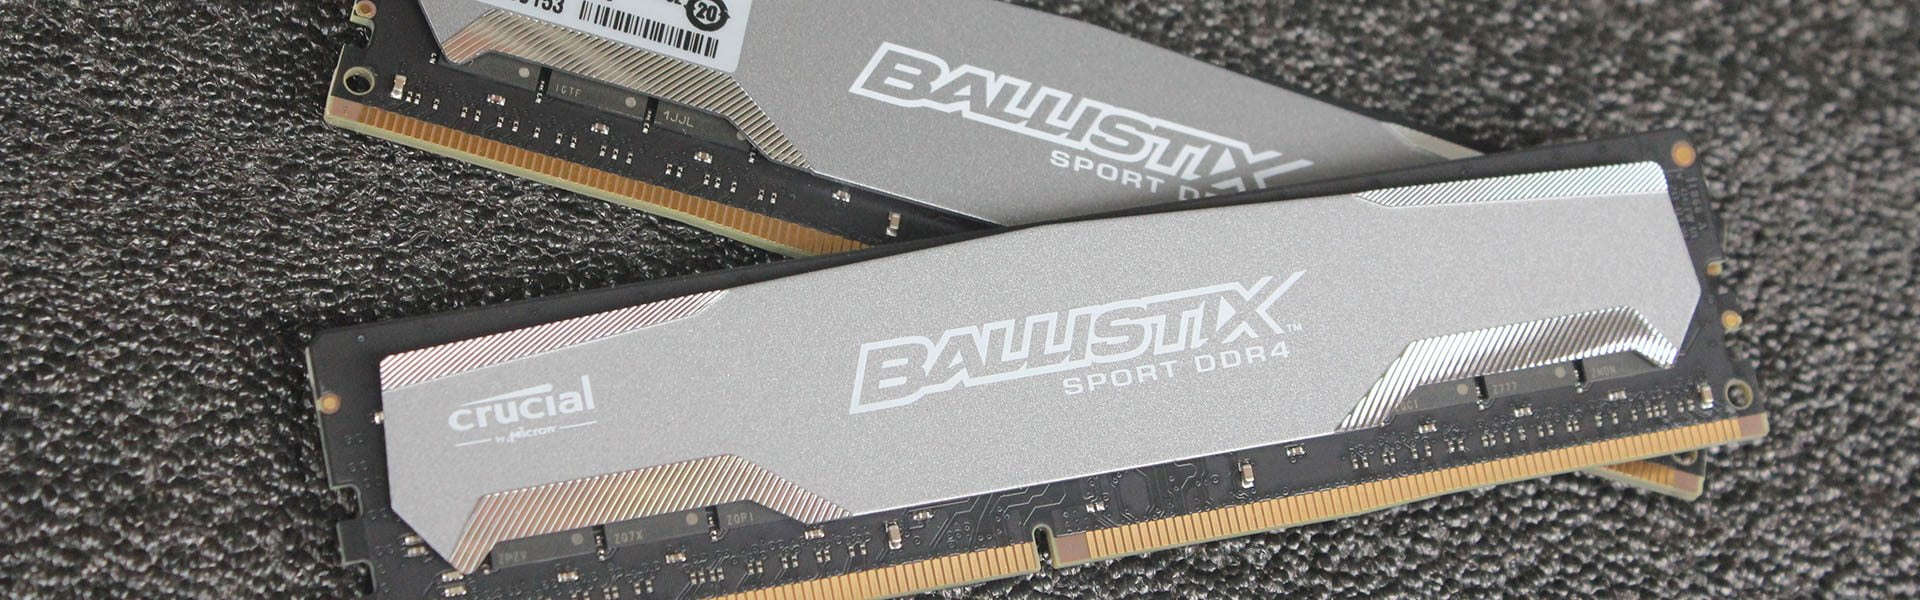 Ballistix Sport DDR4 Review 17